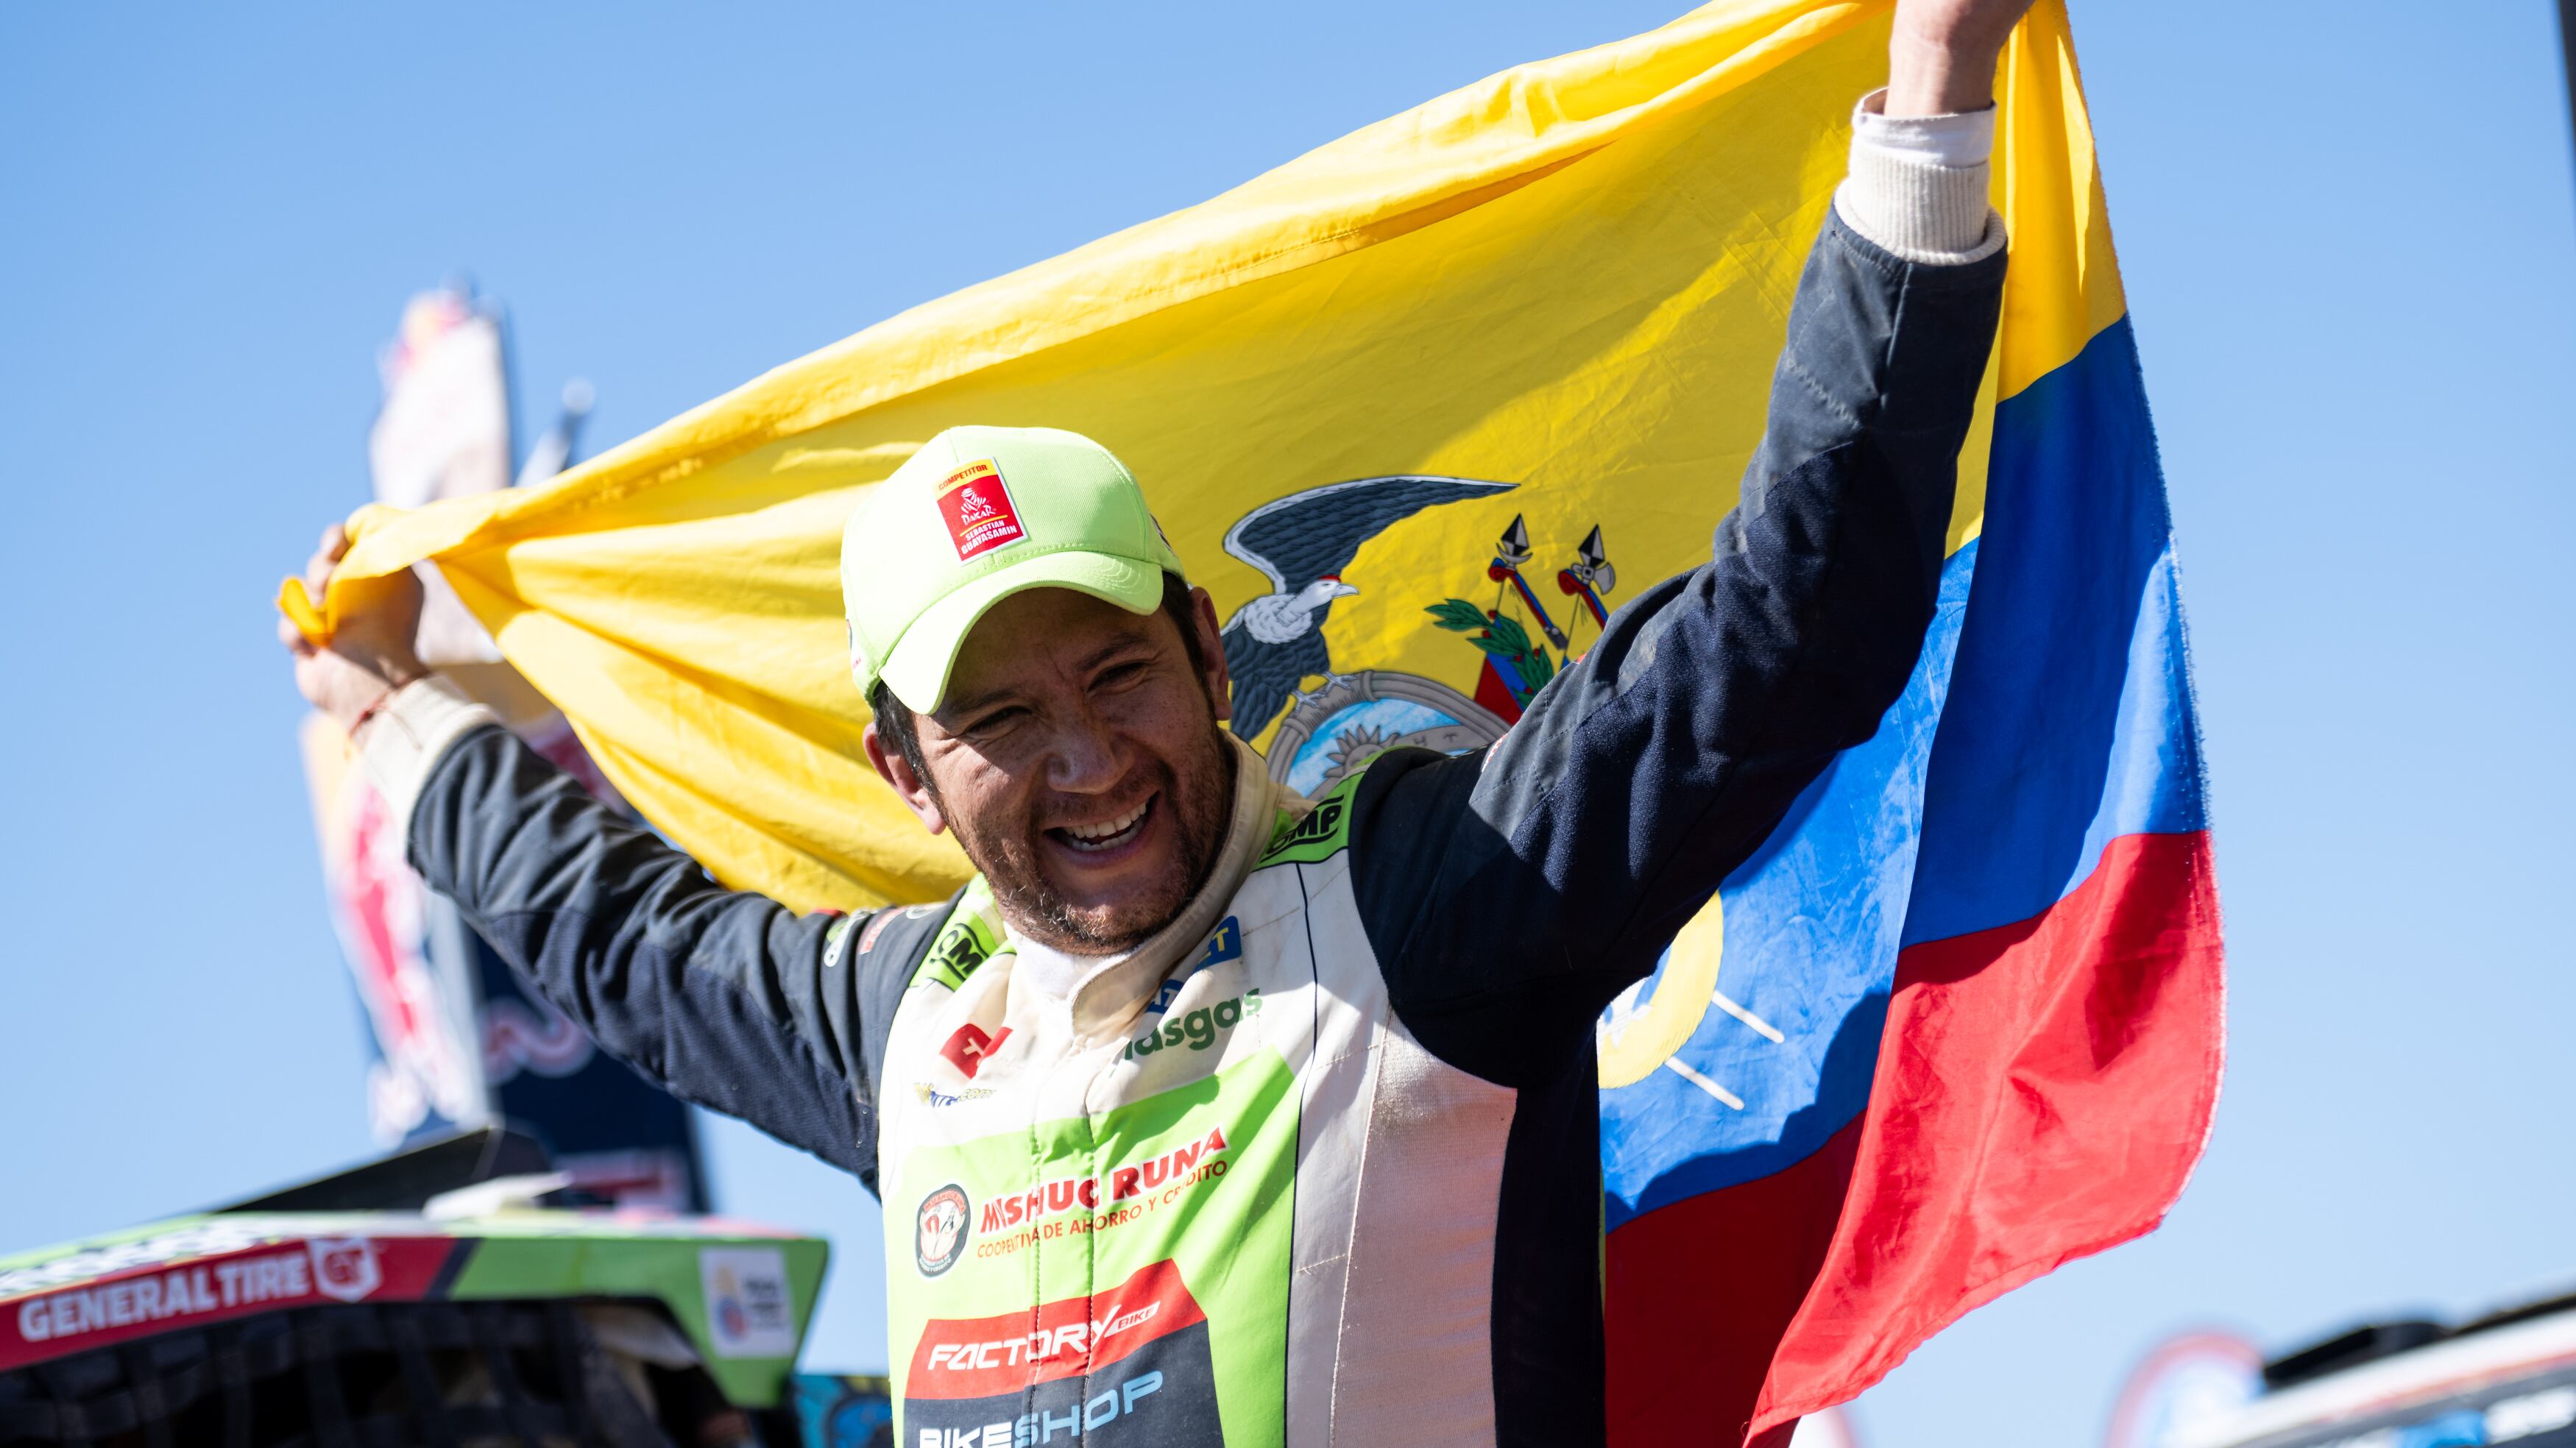 Piloto Sebastián Guayasamín hizo un balance de lo que vivió en el Rally Dakar más difícil y más exitoso de su vida.